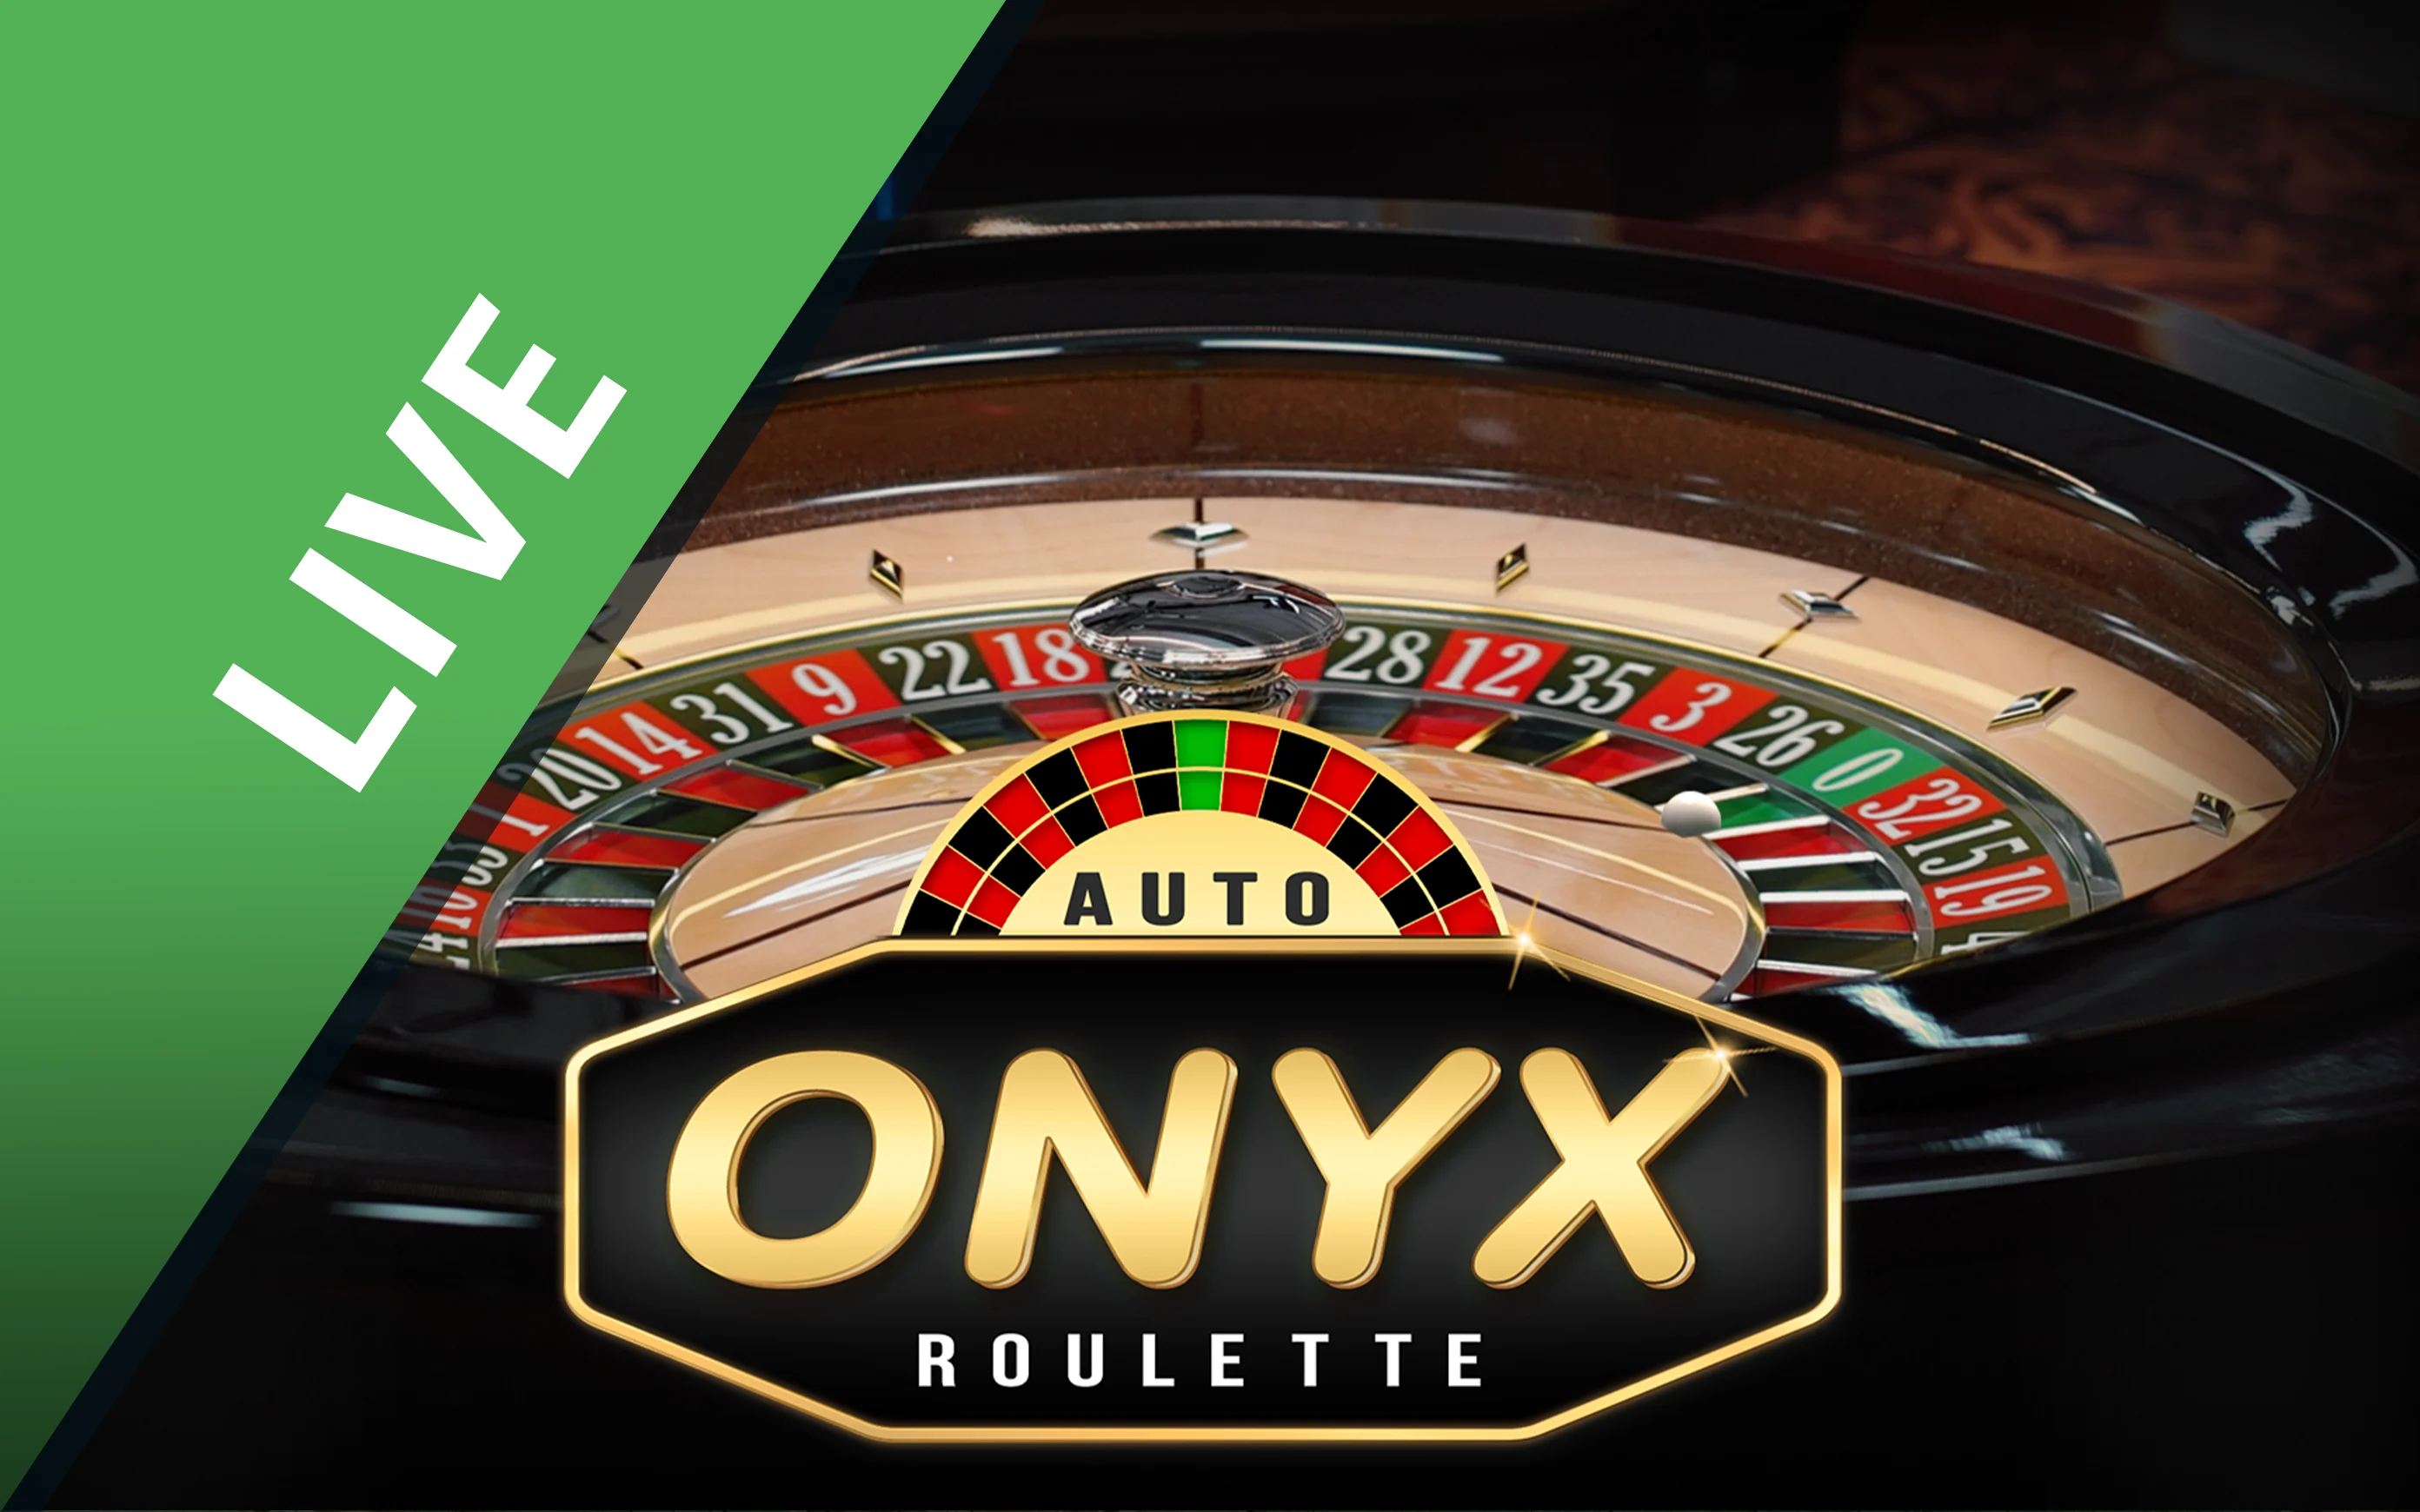 Speel Onyx Roulette op Starcasino.be online casino